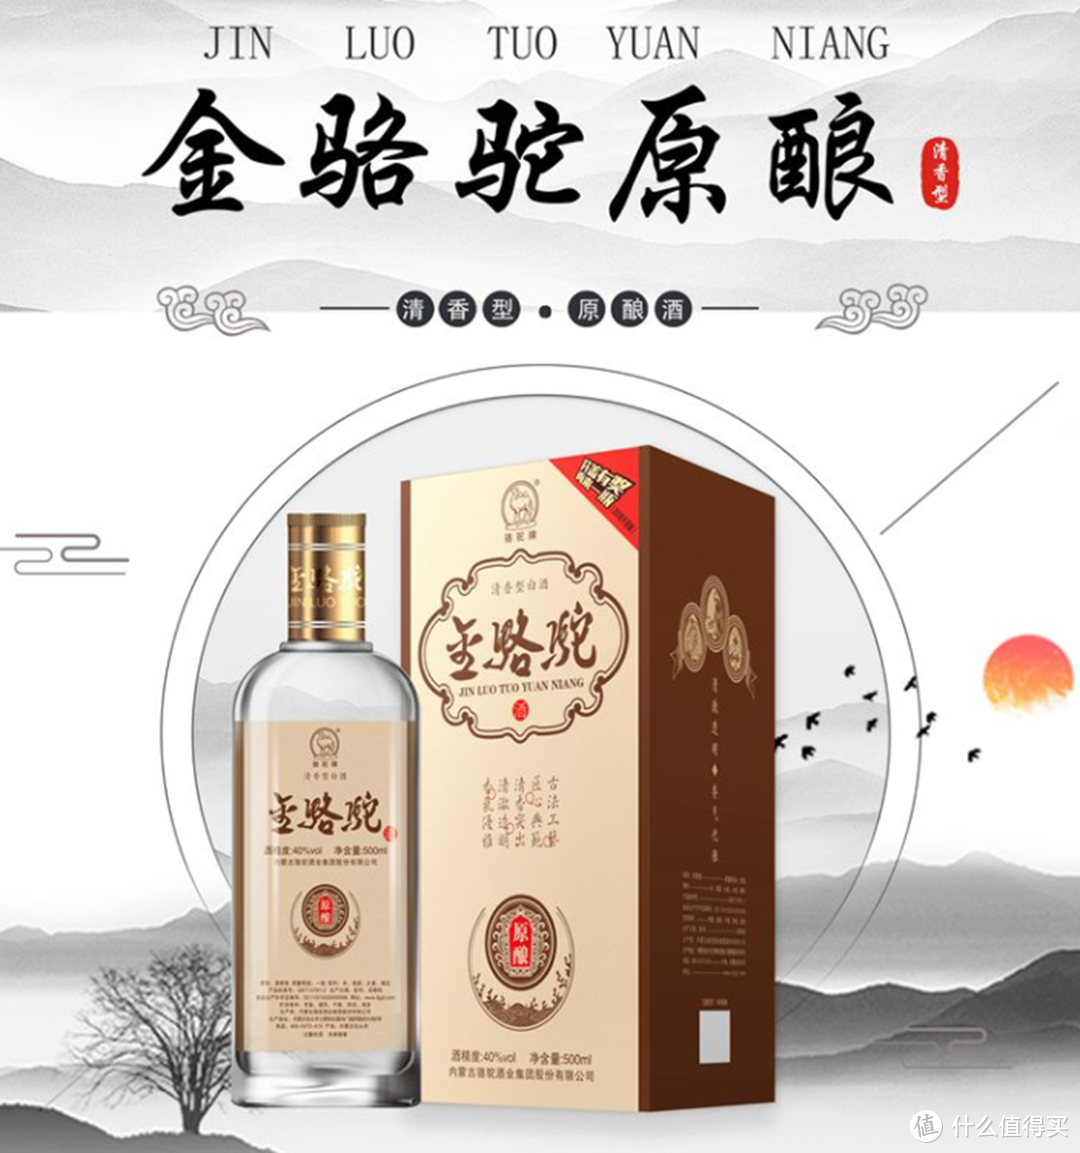 金骆驼酒主要生产清香型白酒,也有浓香酒,外省知名度